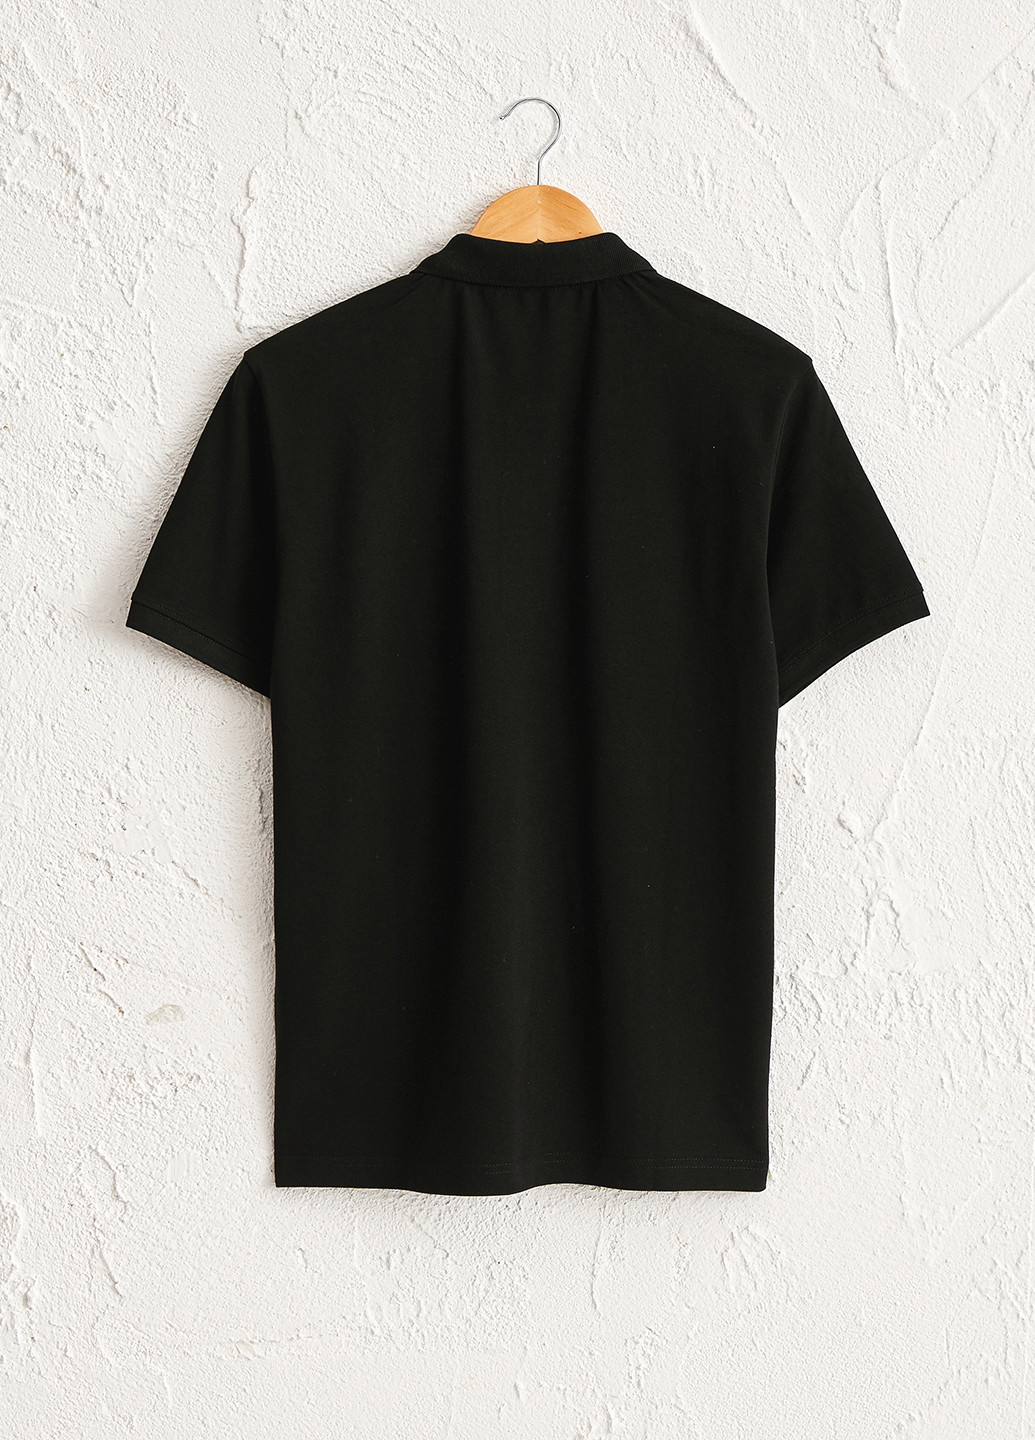 Черная футболка-поло для мужчин LC Waikiki однотонная